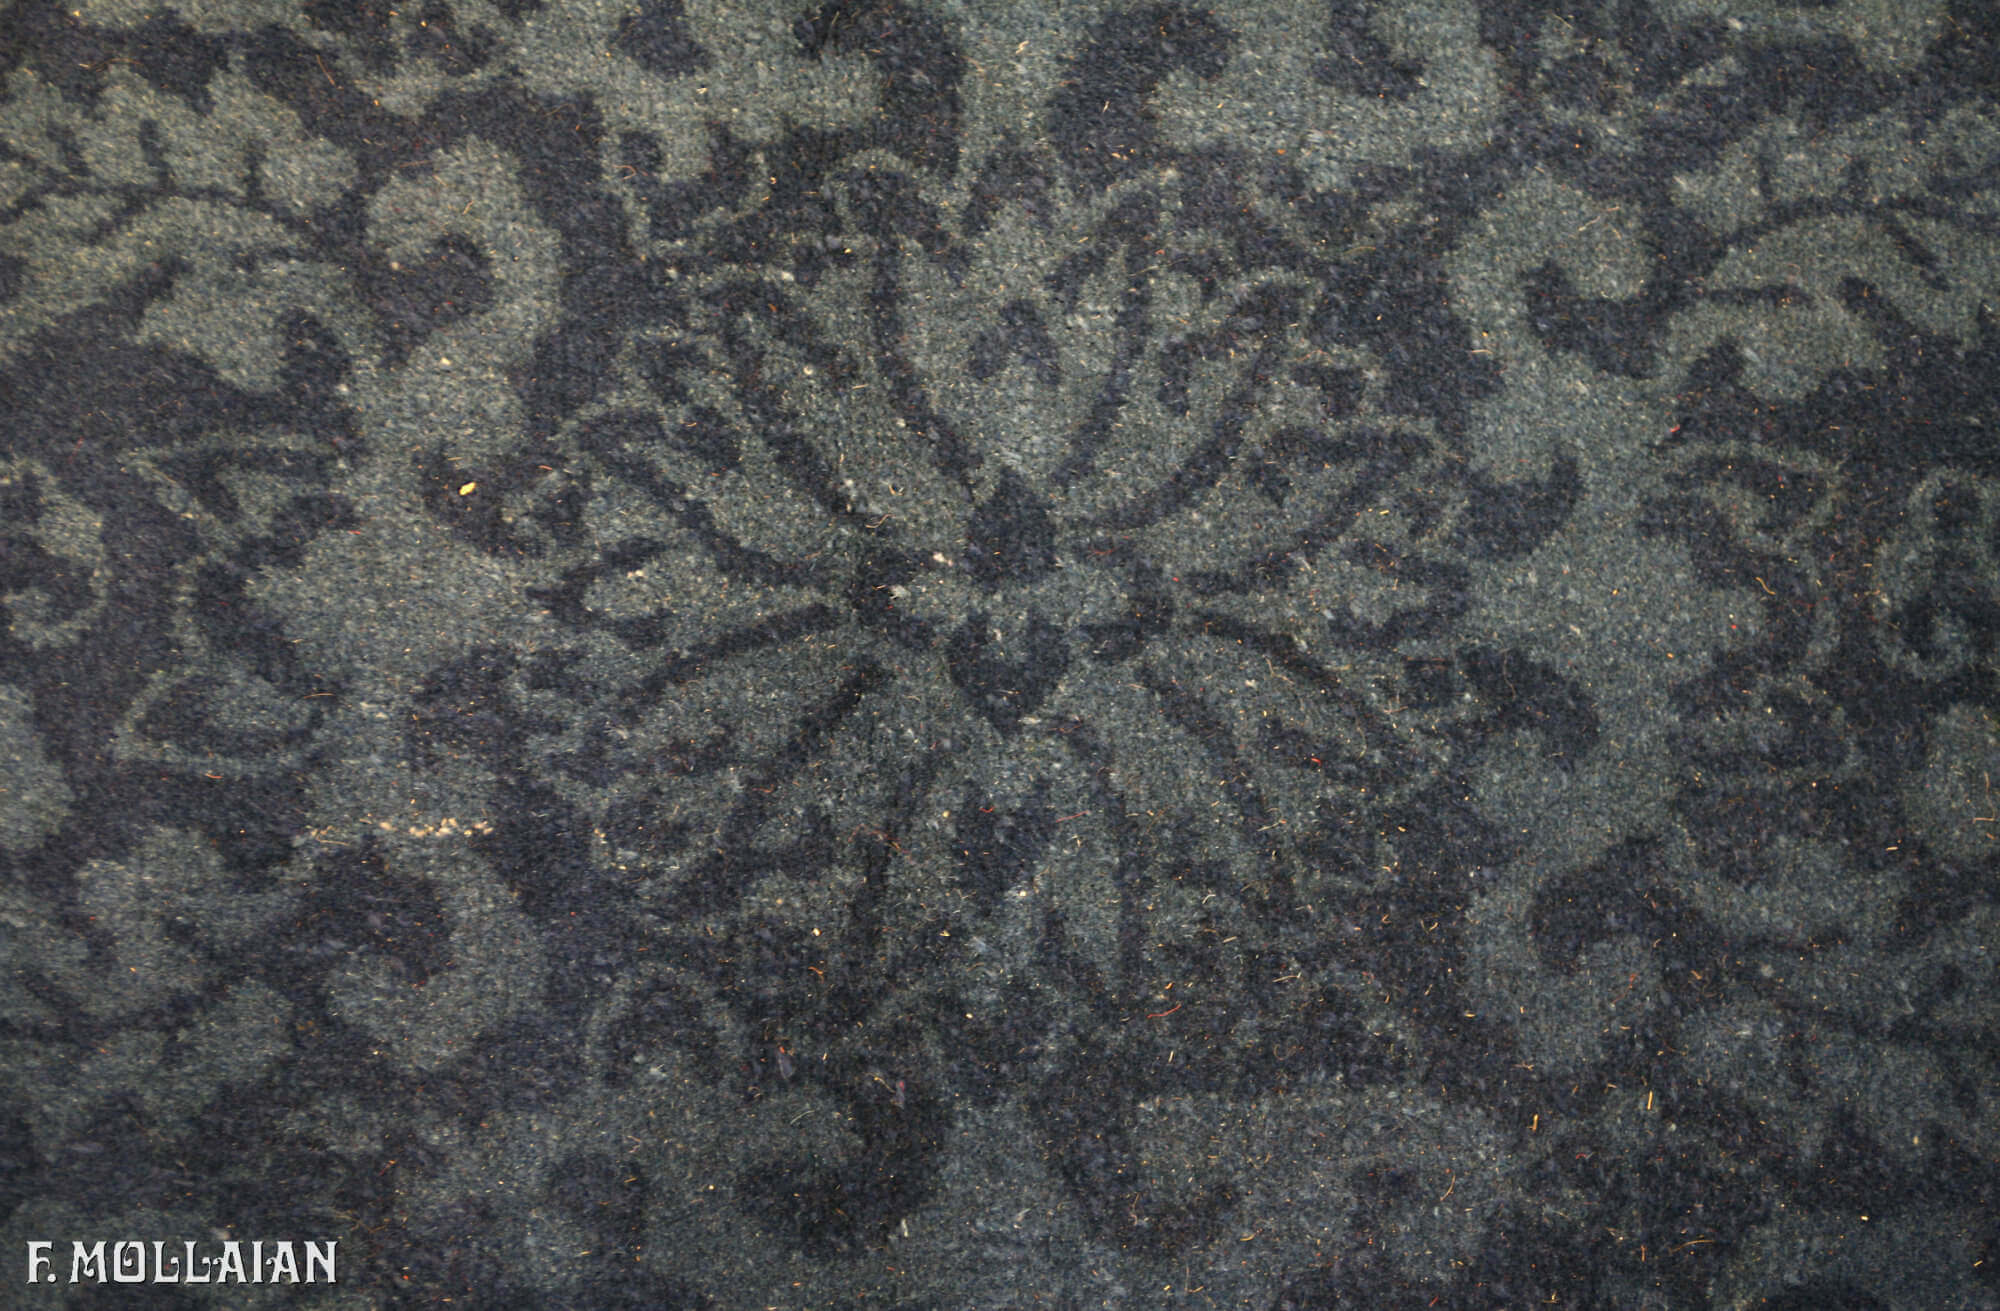 A Large Antique Peking Nichols Chinese Carpet n°:82696989